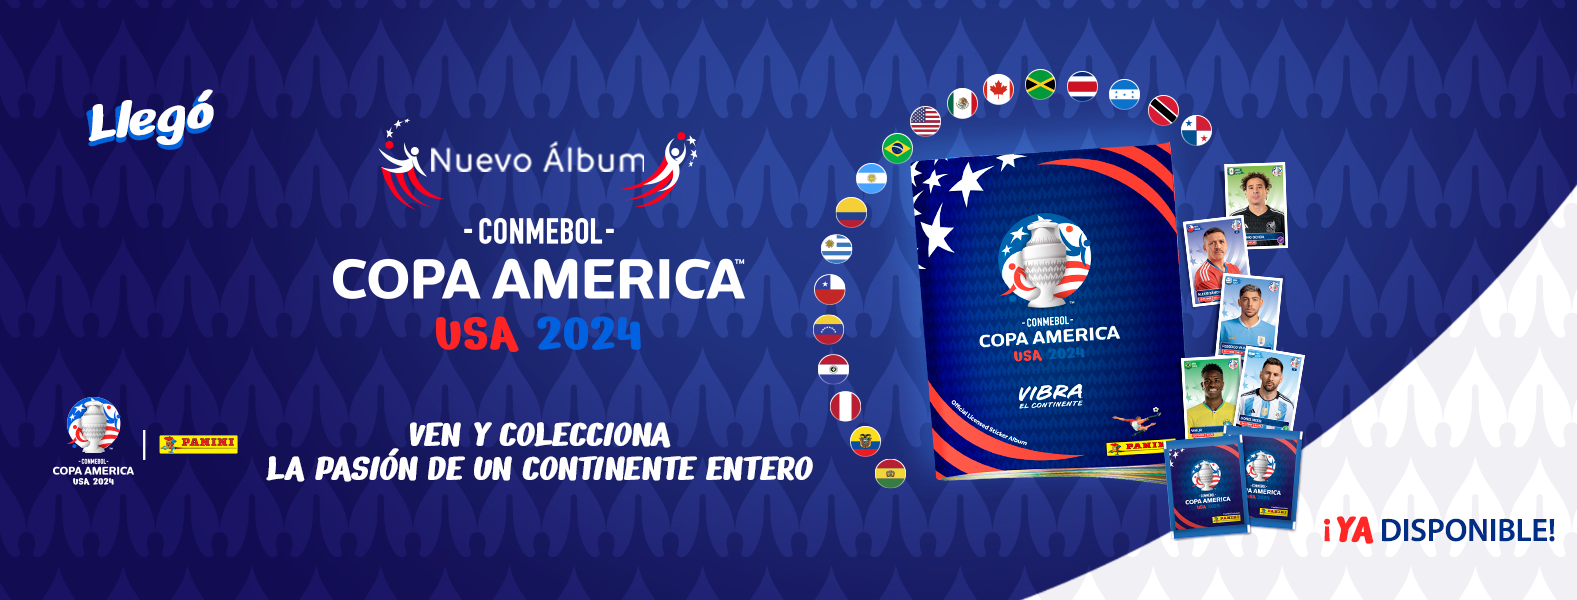 ¡Álbum oficial de stickers de la Copa América USA 2024 con las 18 selecciones clasificadas!